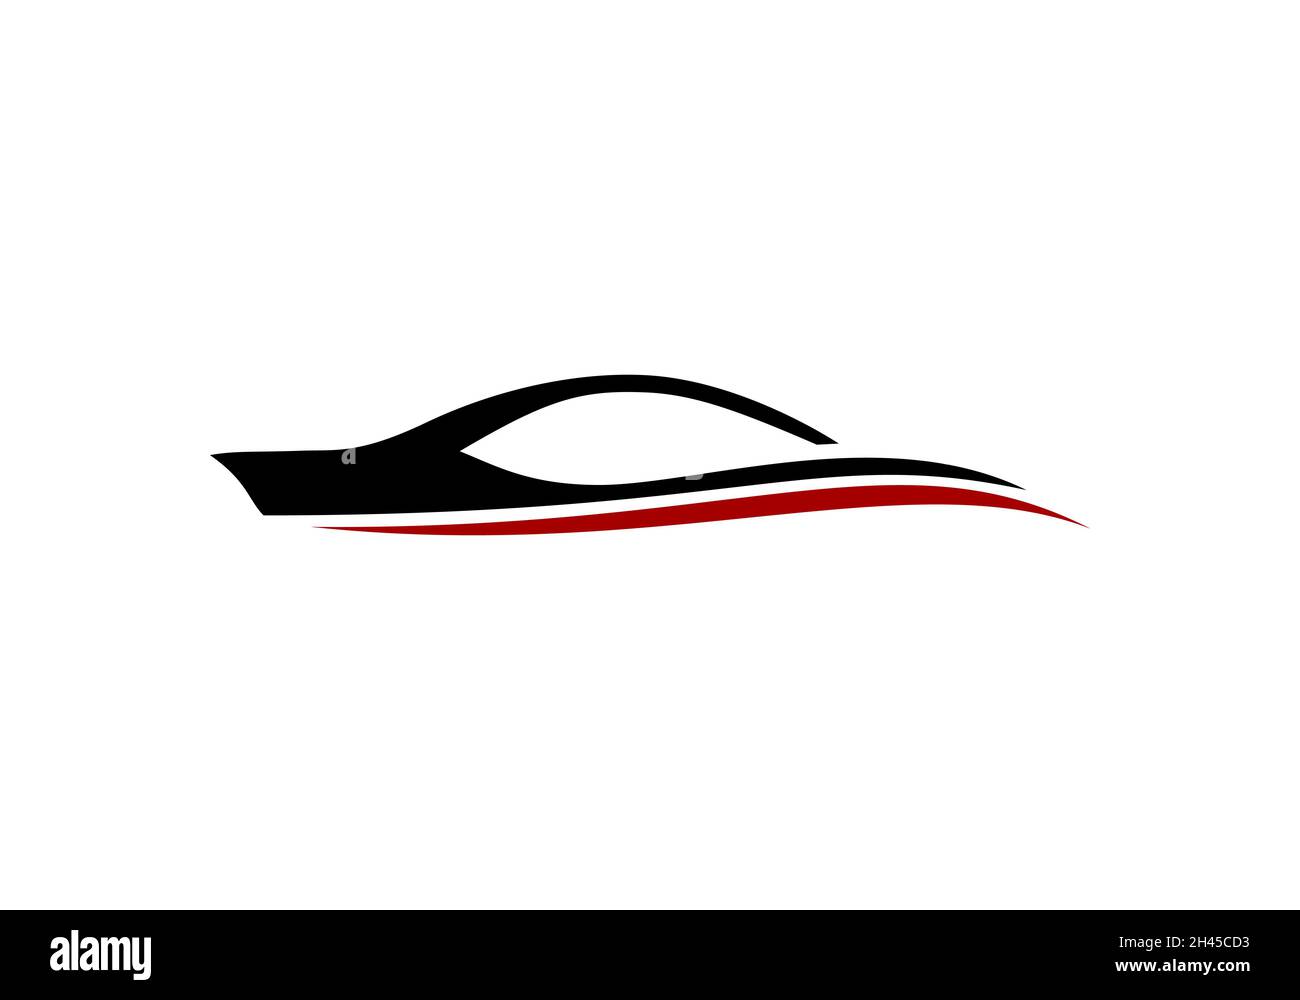 https://c8.alamy.com/comp/2H45CD3/logo-design-concept-related-to-car-or-automotive-2H45CD3.jpg